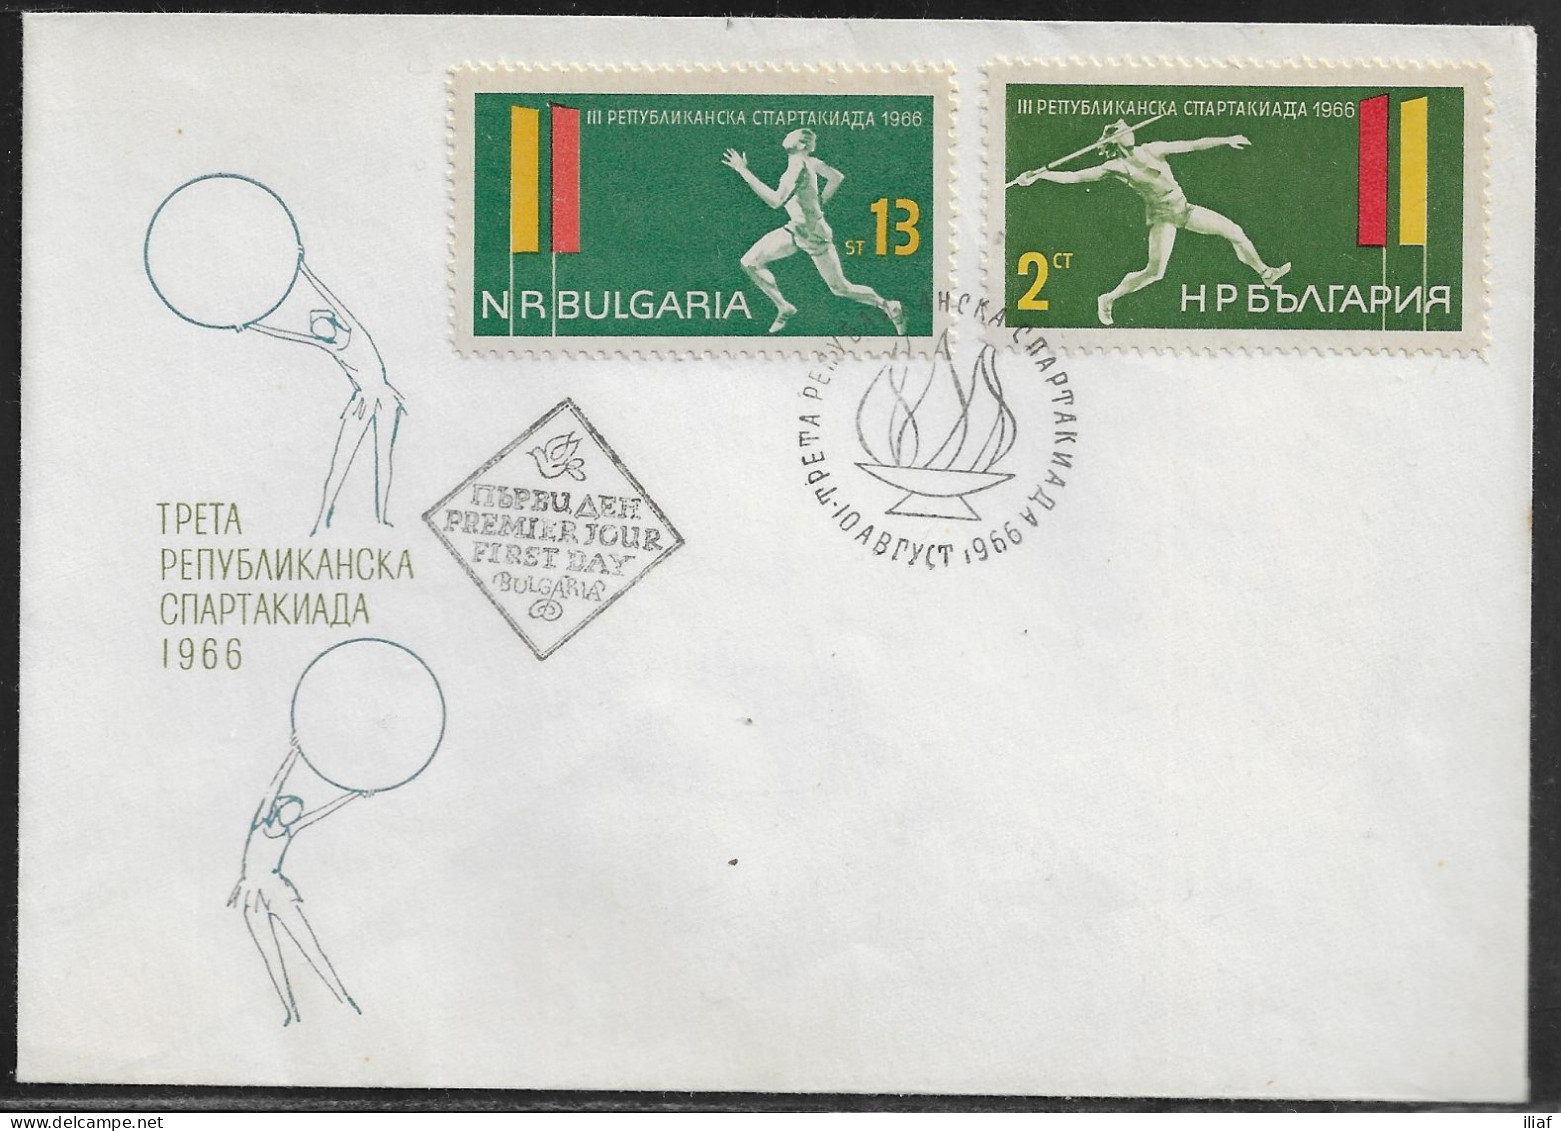 Bulgaria FDC Sc. 1512-1513  The Third Republic Bulgaria Spartakiada 1966.  FDC Cancellation On FDC Envelope - FDC